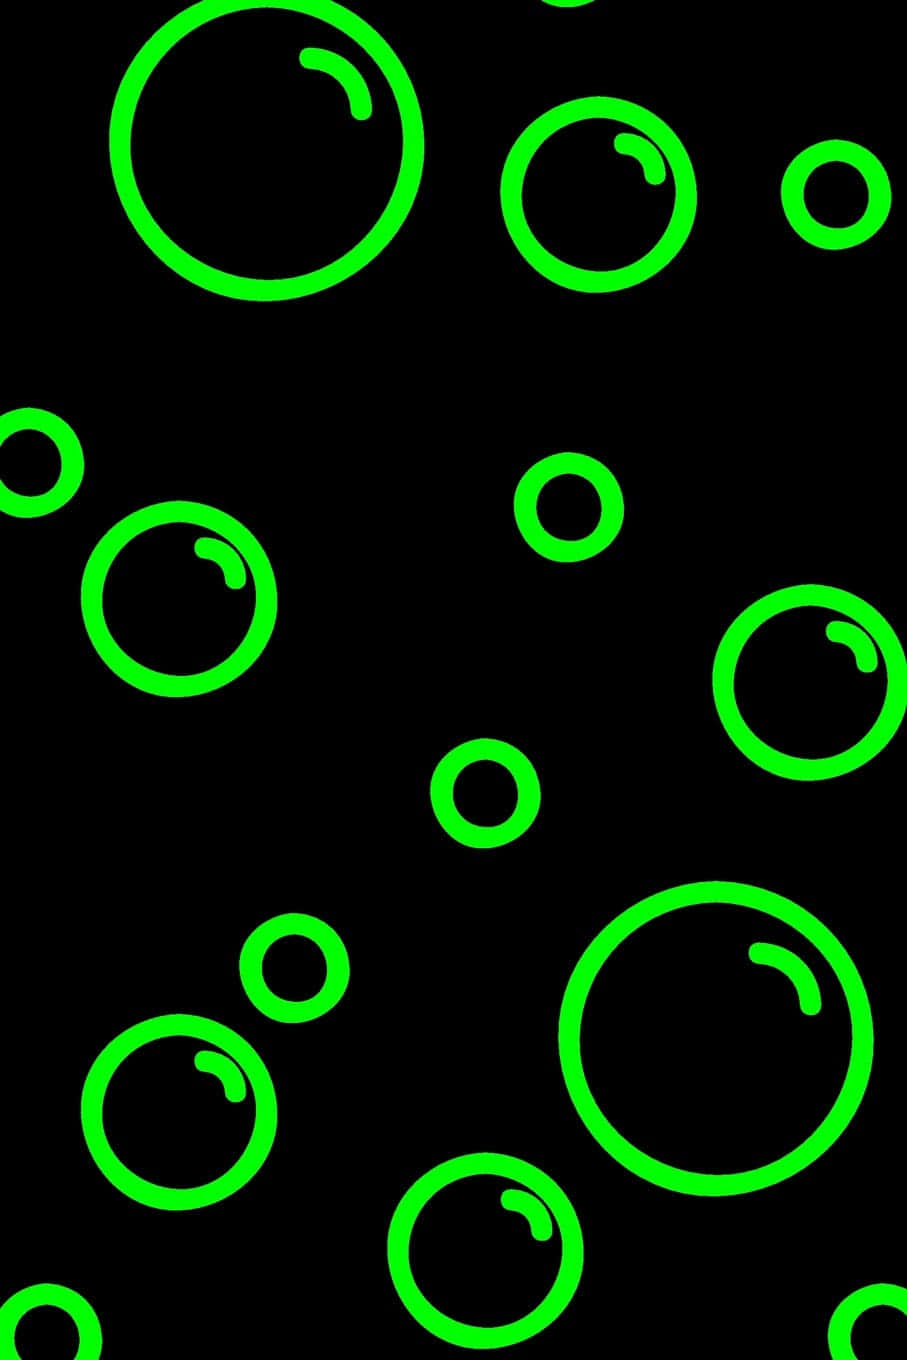 Neonbubbligt Grön- Och Svartfärgat Bakgrundsbild.